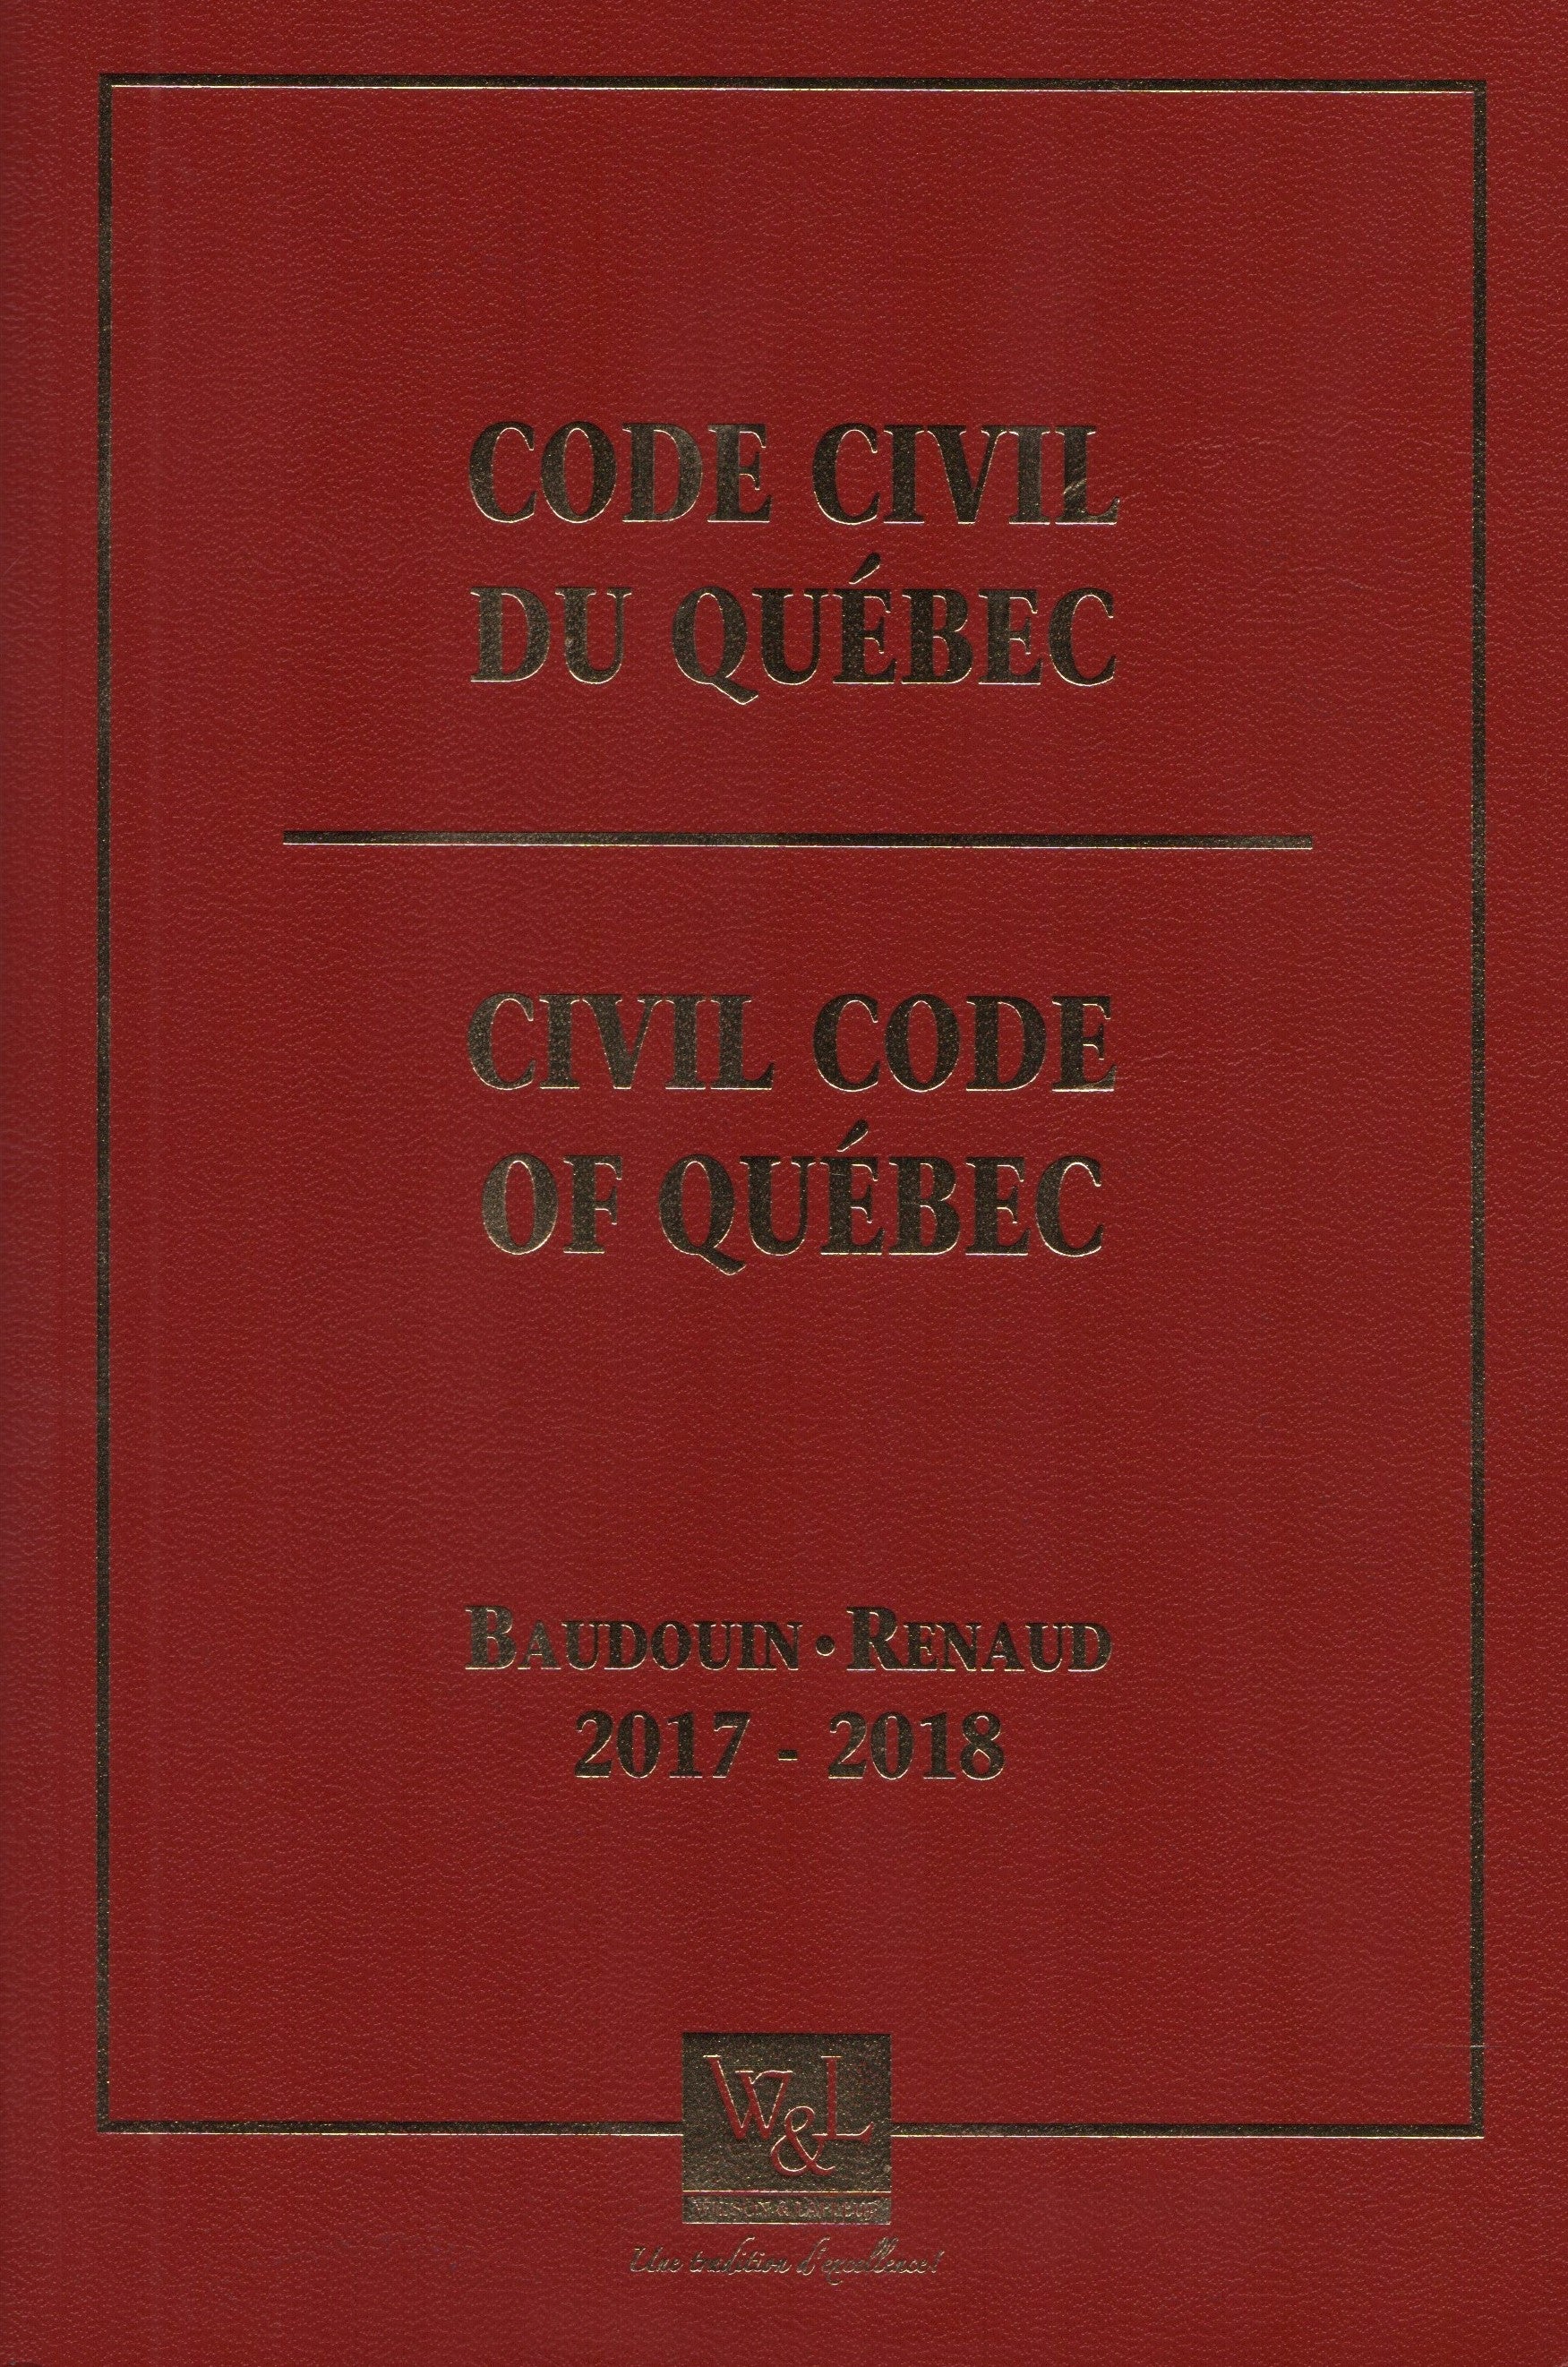 BAUDOUIN-RENAUD. Code civil du Québec 2017-2018 / Civil Code of Québec (Édition à jour au 1er juillet 2017 incluant envoi no 28)